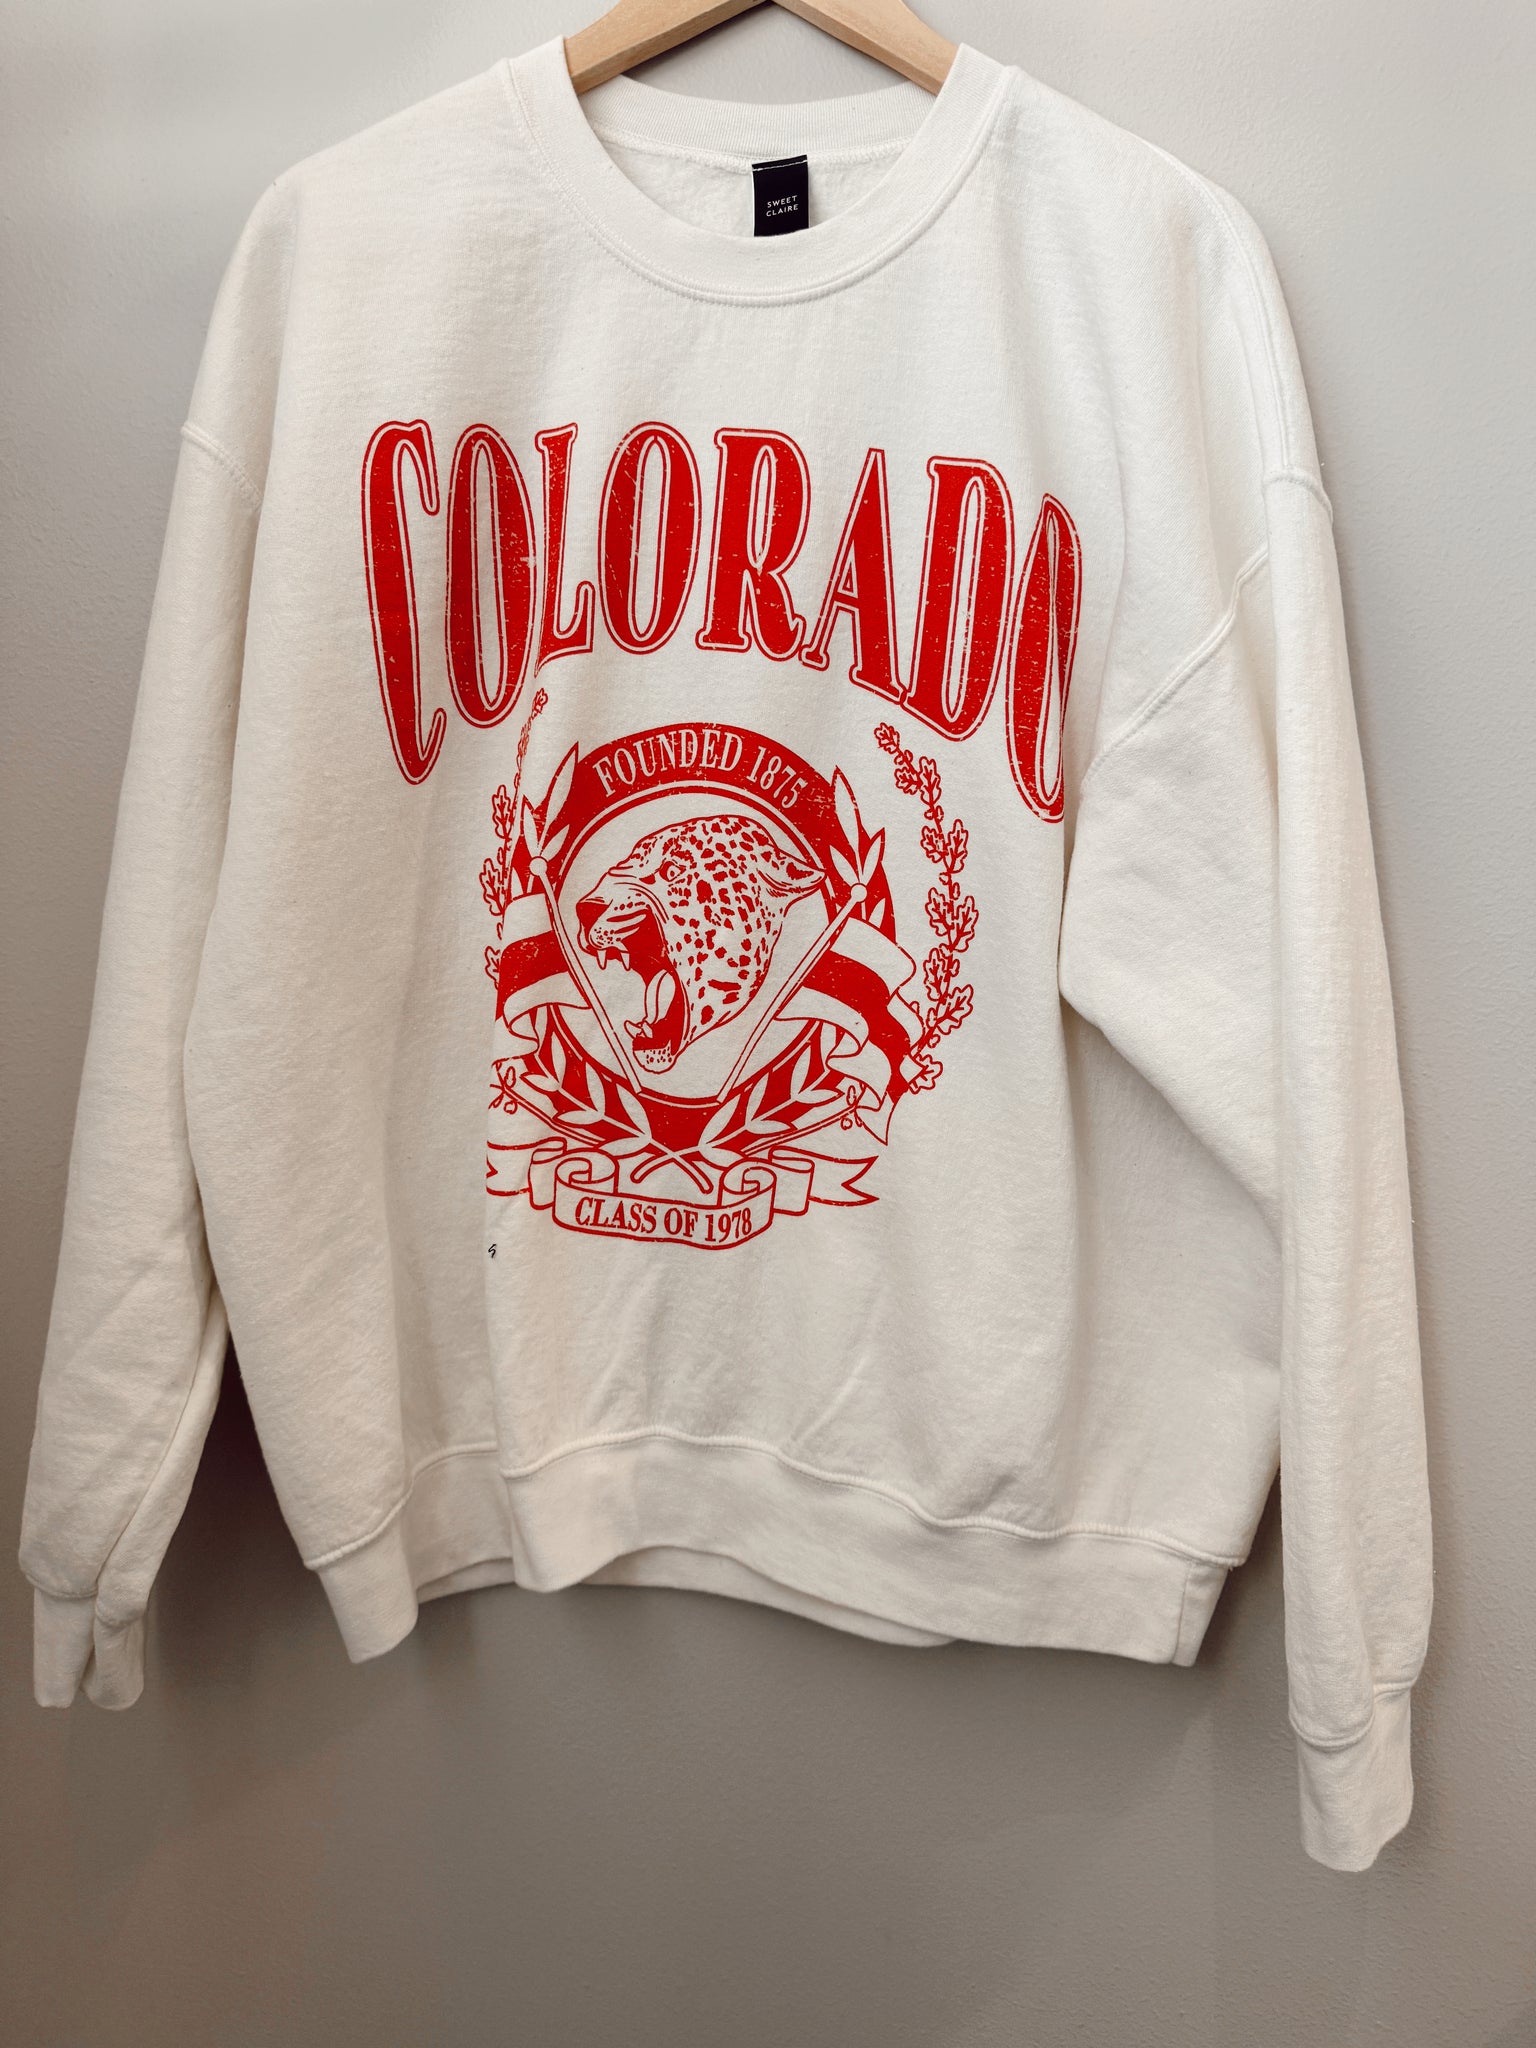 Colorado sweatshirt